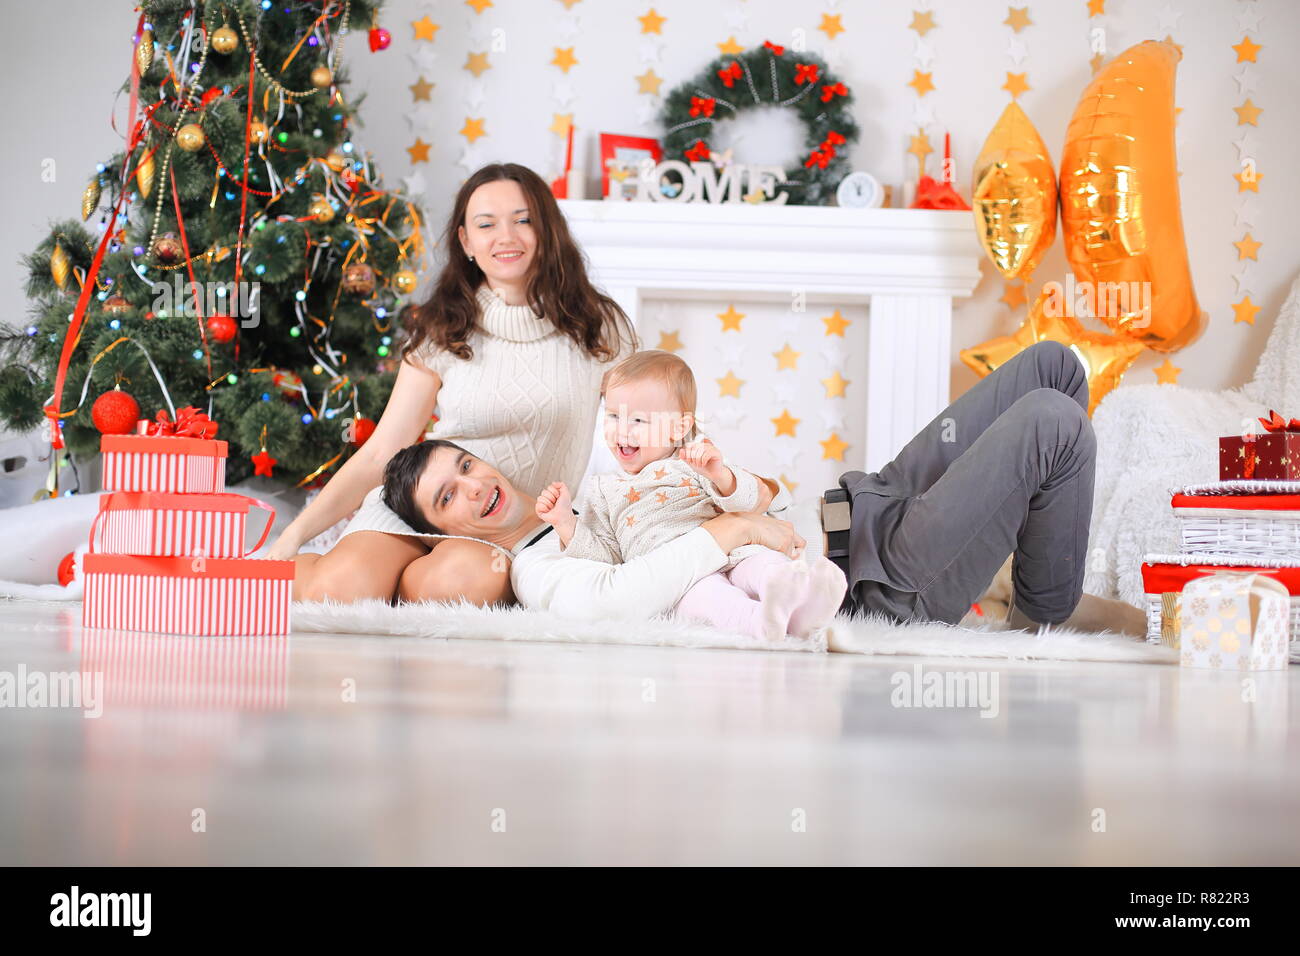 Frohe Weihnachten feiern. Schöne Familie. Weihnachten Wunder Stockfoto